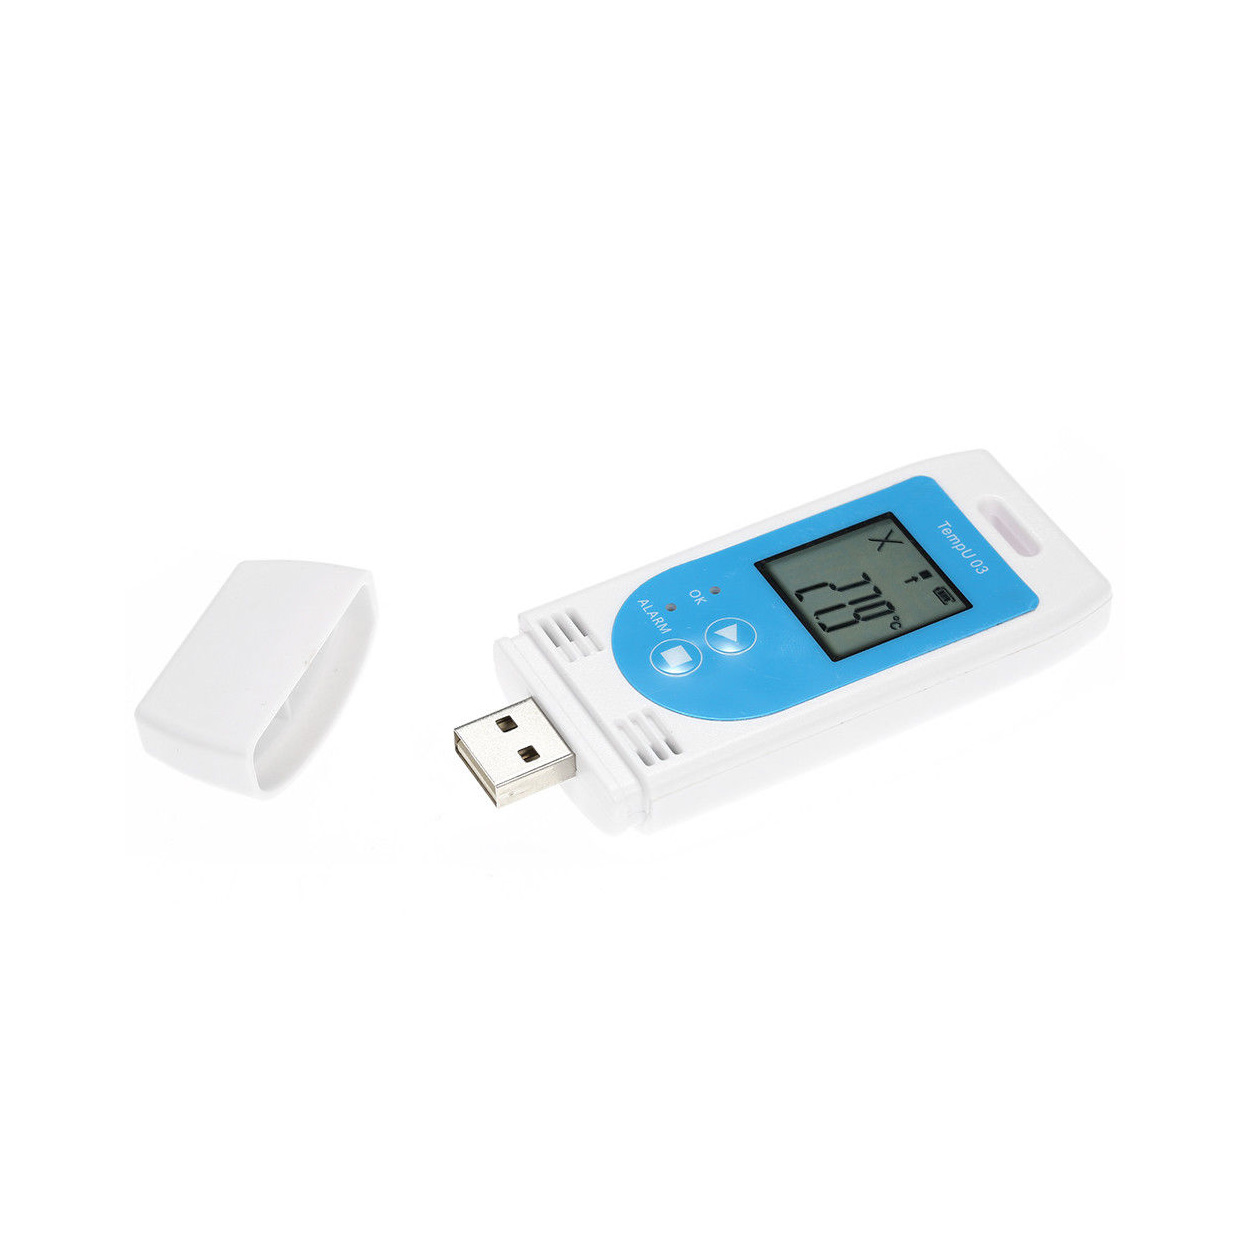 USB DataLoger TempU03 pro měření teploty a vlhkosti s displejem